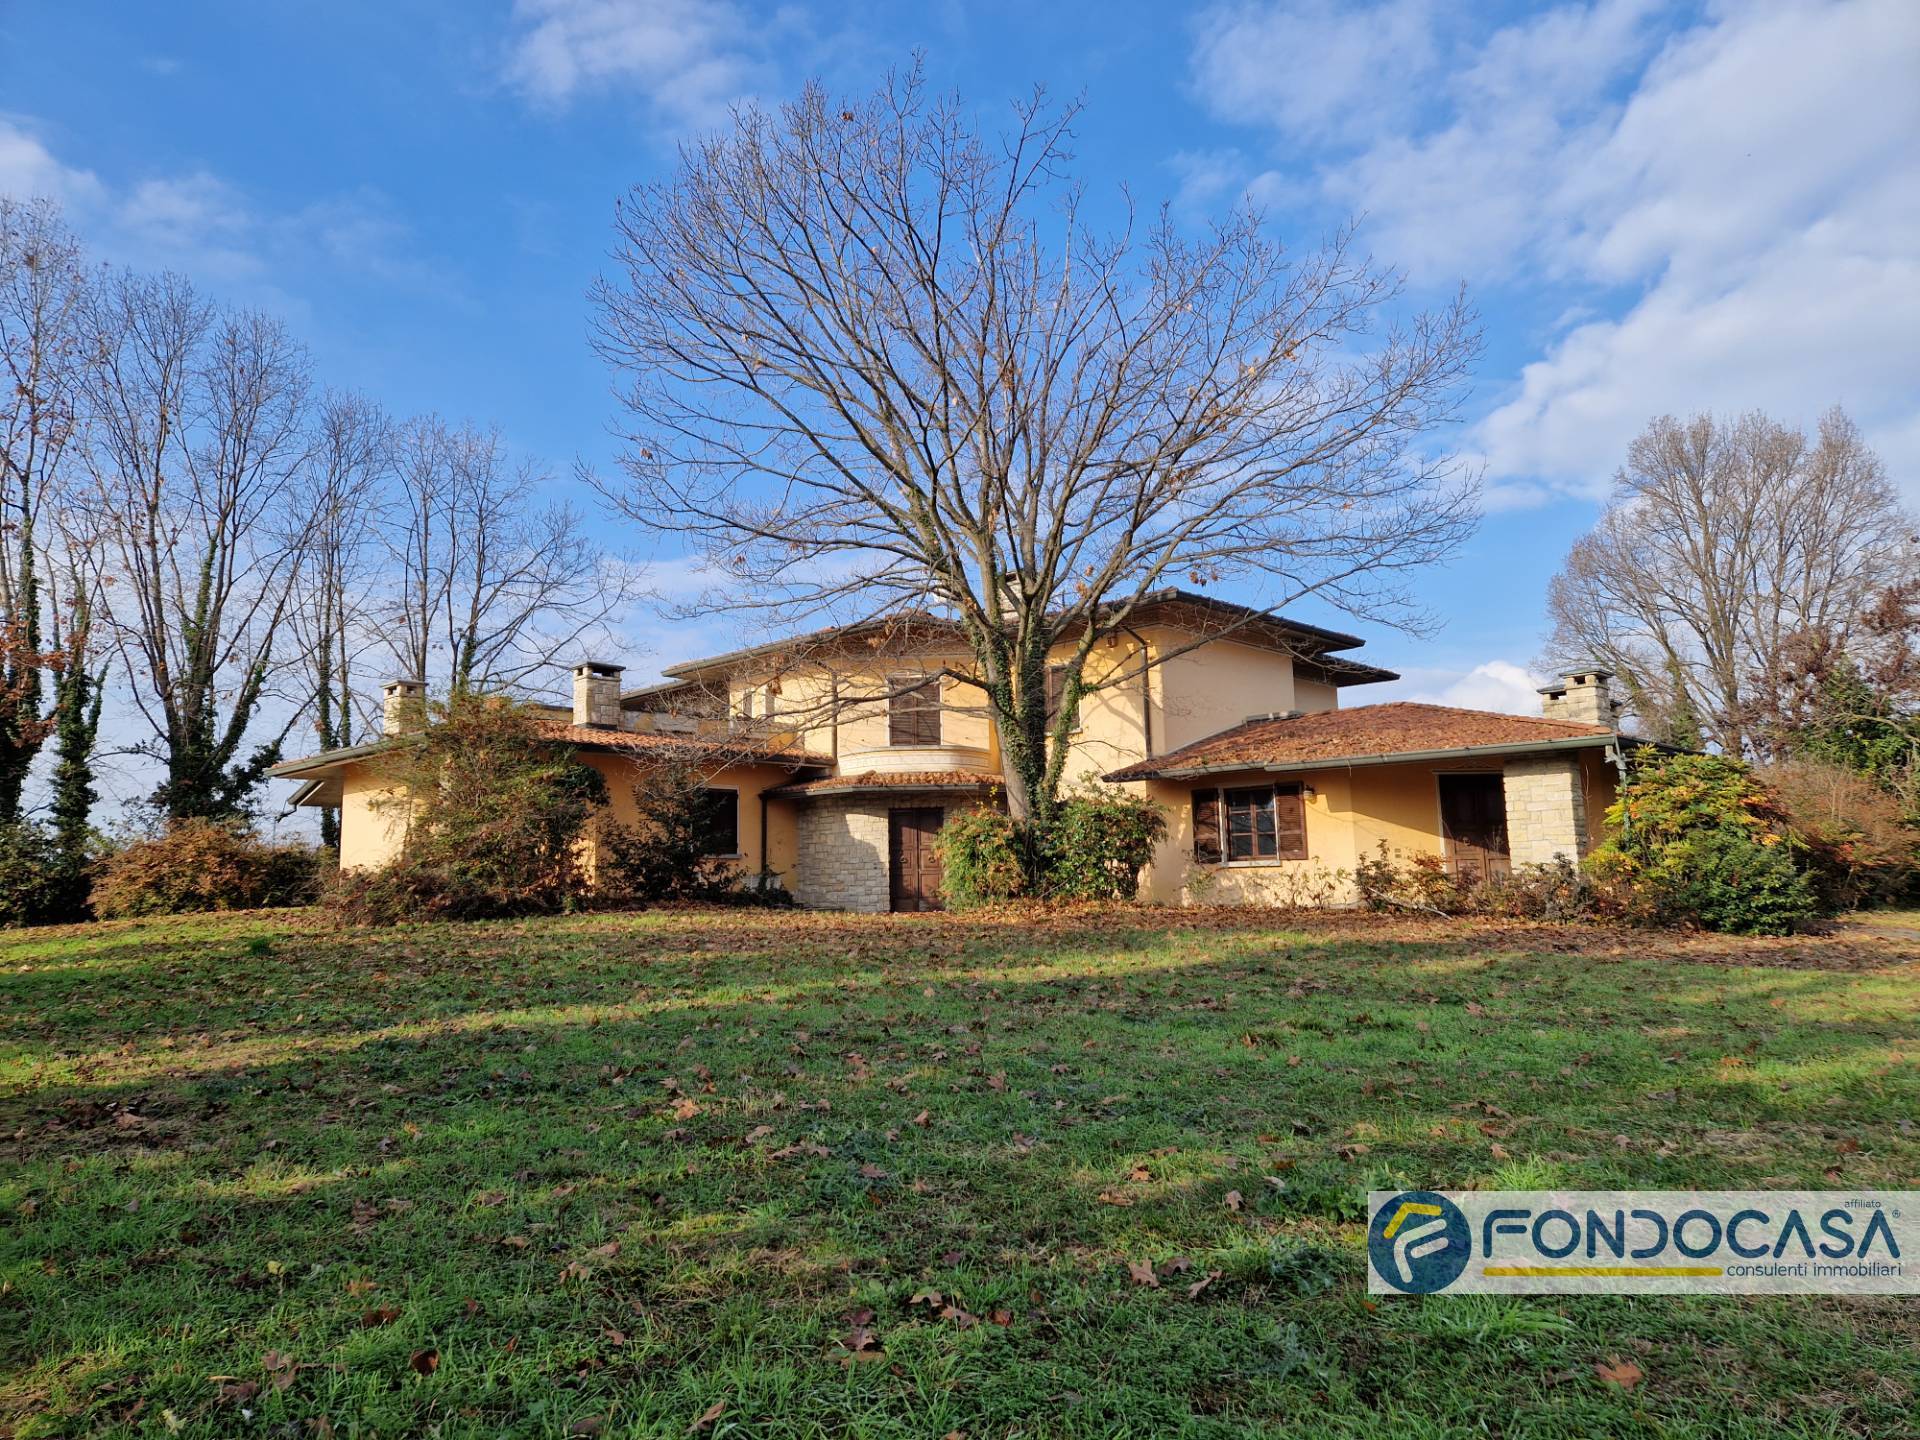 Villa in vendita a Cazzago San Martino, 18 locali, prezzo € 869.000 | PortaleAgenzieImmobiliari.it